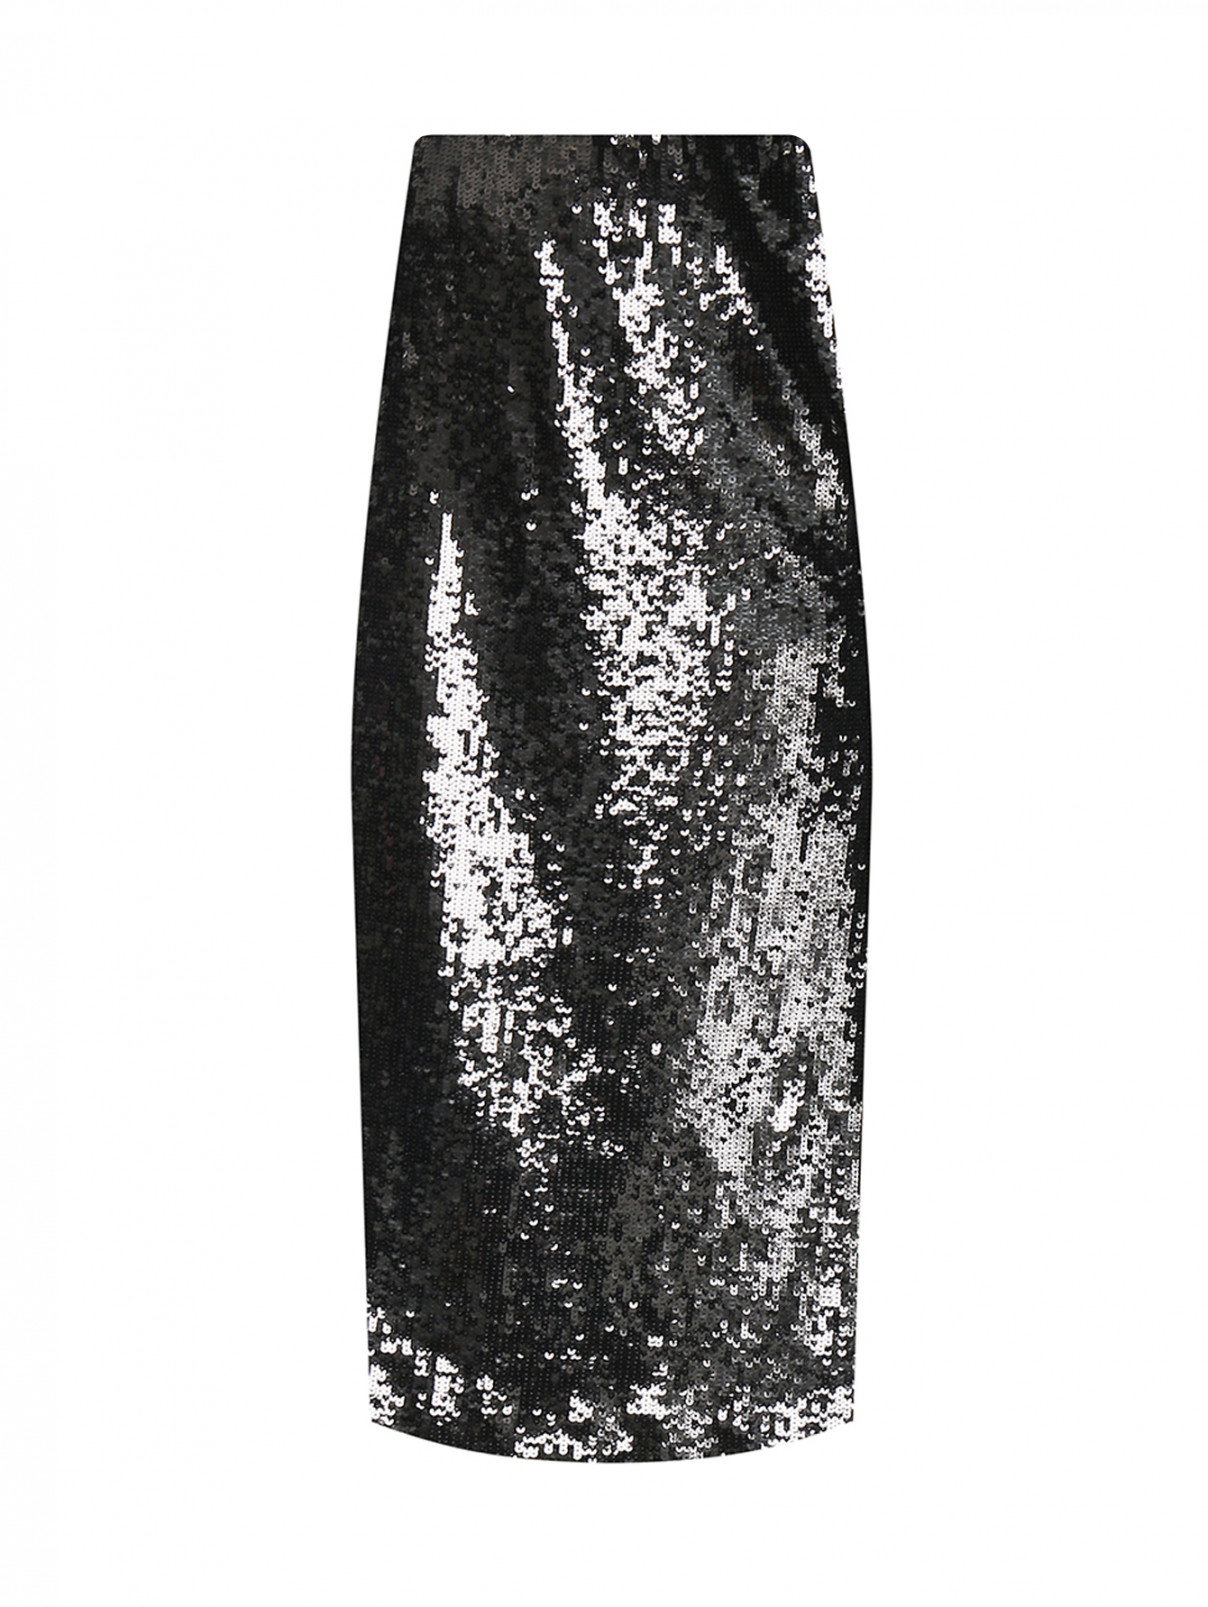 Юбка-миди декорированная пайетками Luisa Spagnoli  –  Общий вид  – Цвет:  Черный